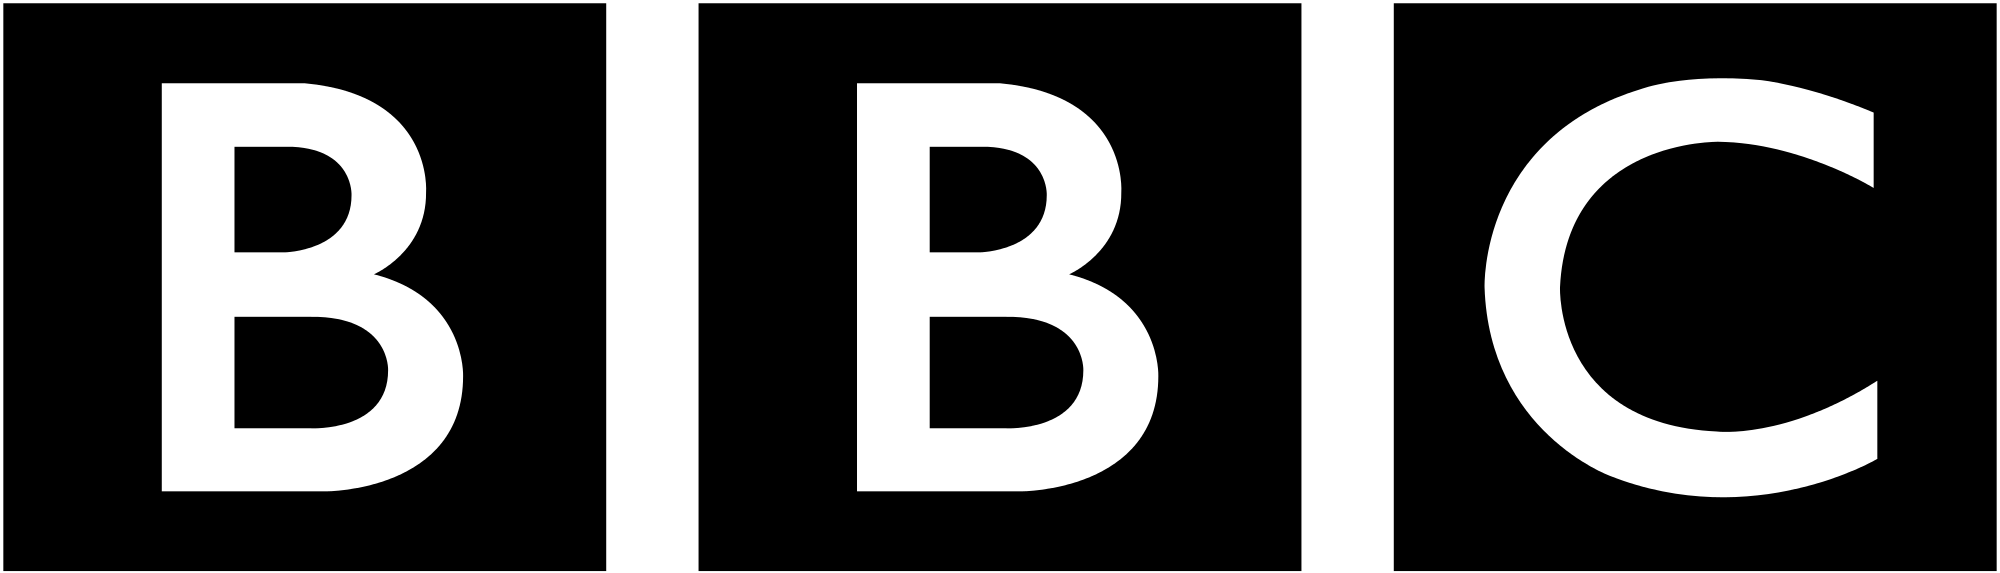 Bbc – Logos Download